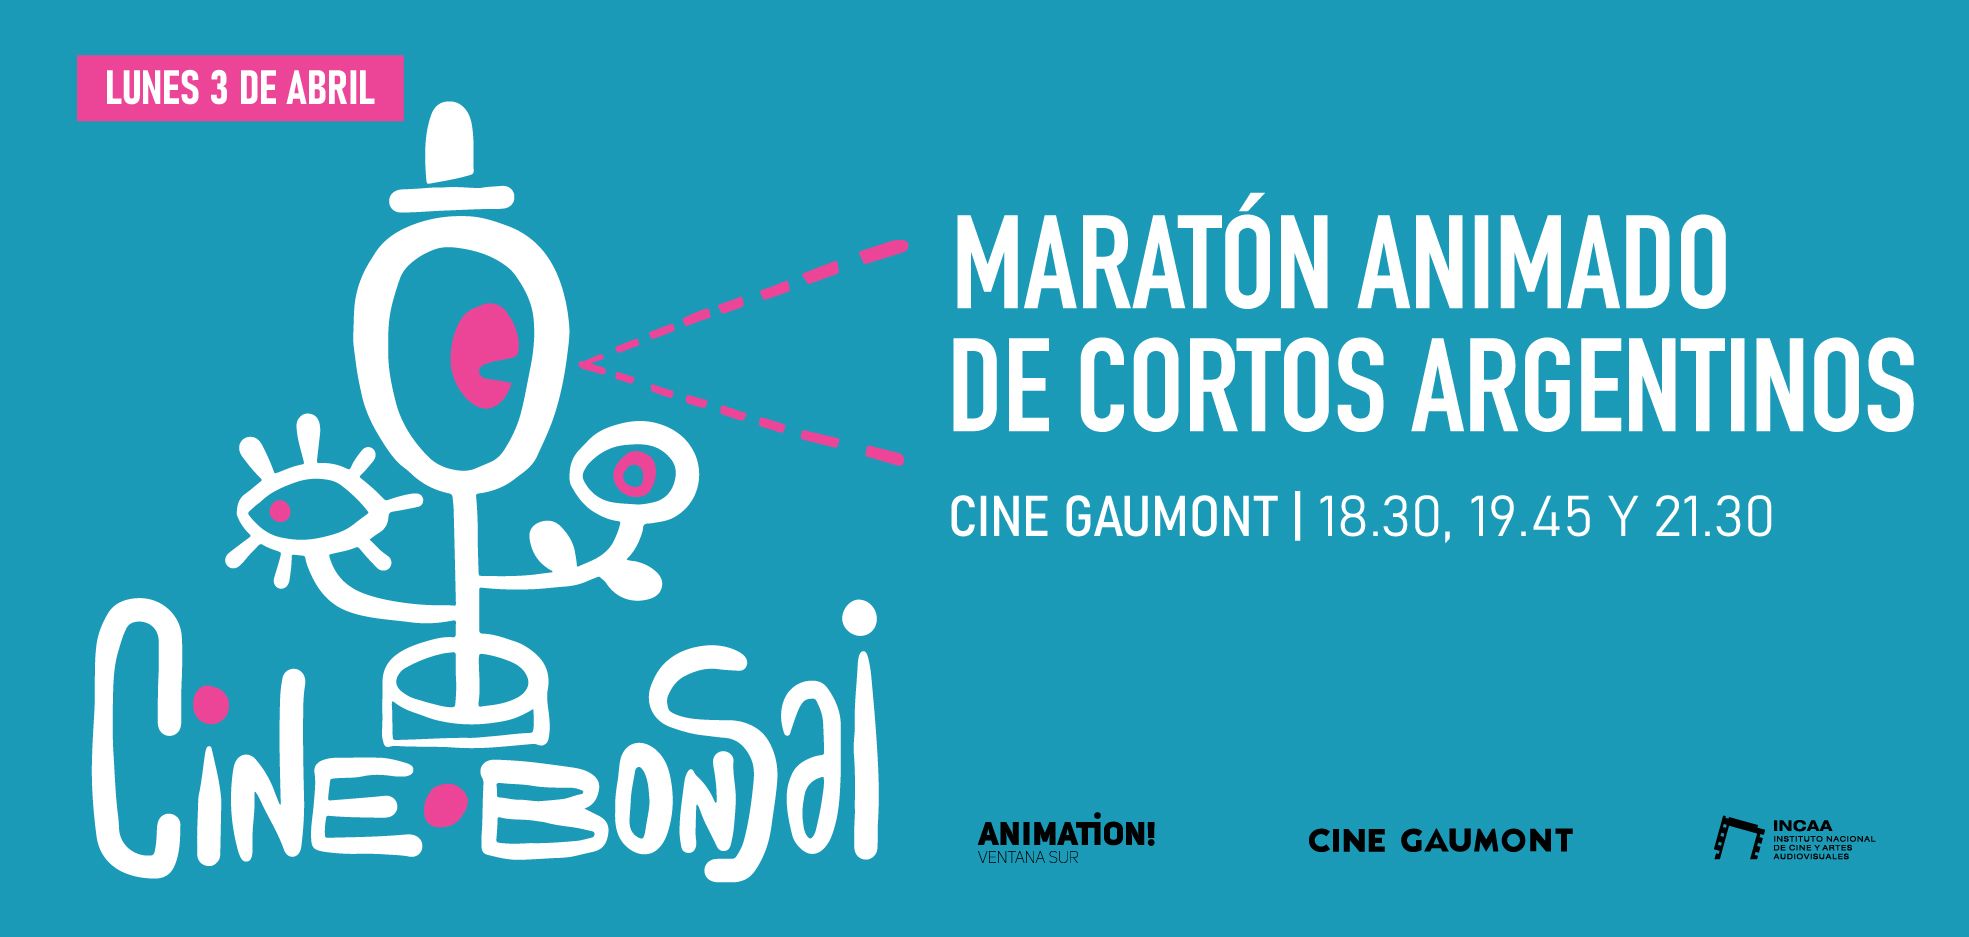 Maratón animada de cortos argentinos, 3 de abril en el cine gaumont